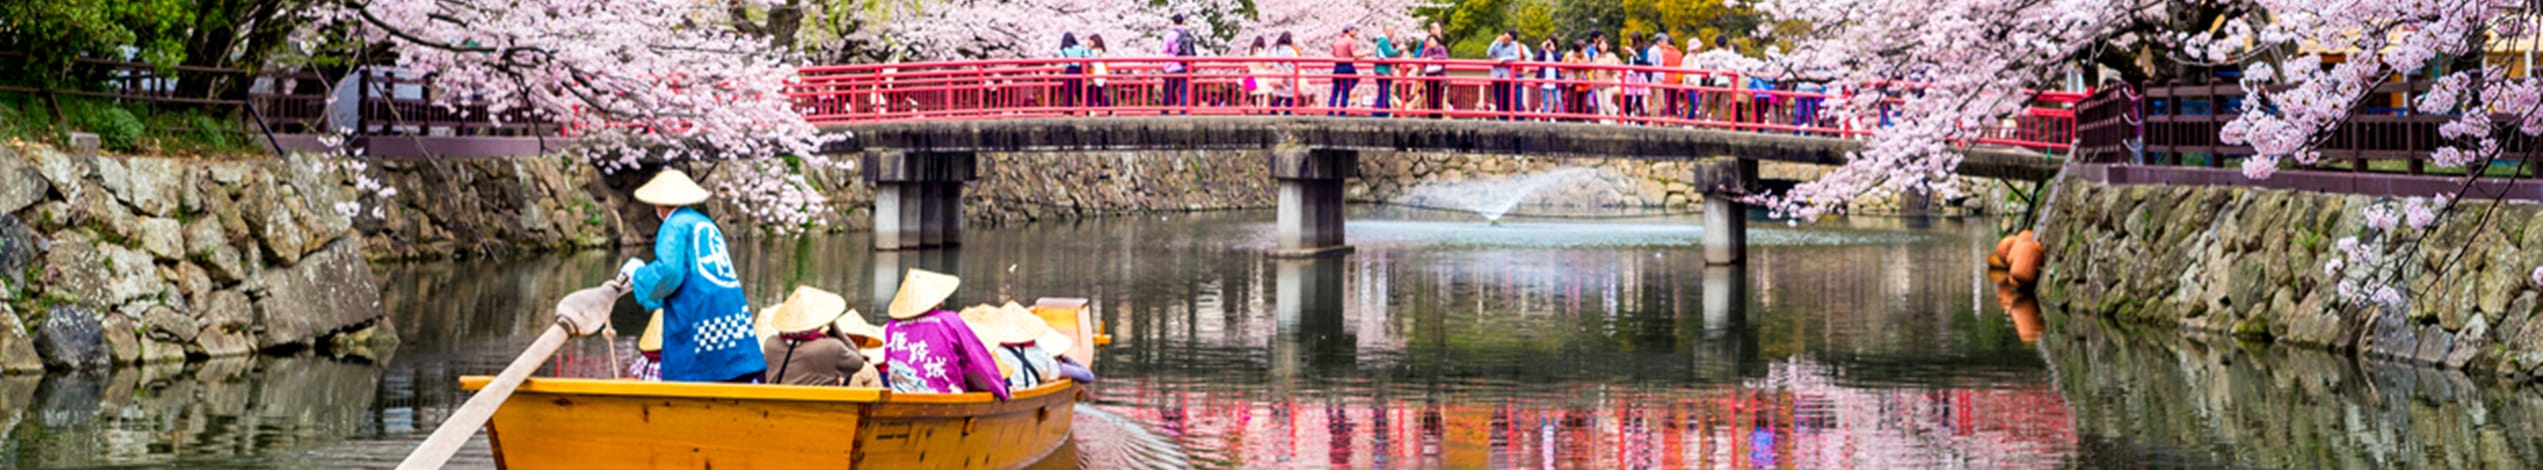 Sakura i Japan